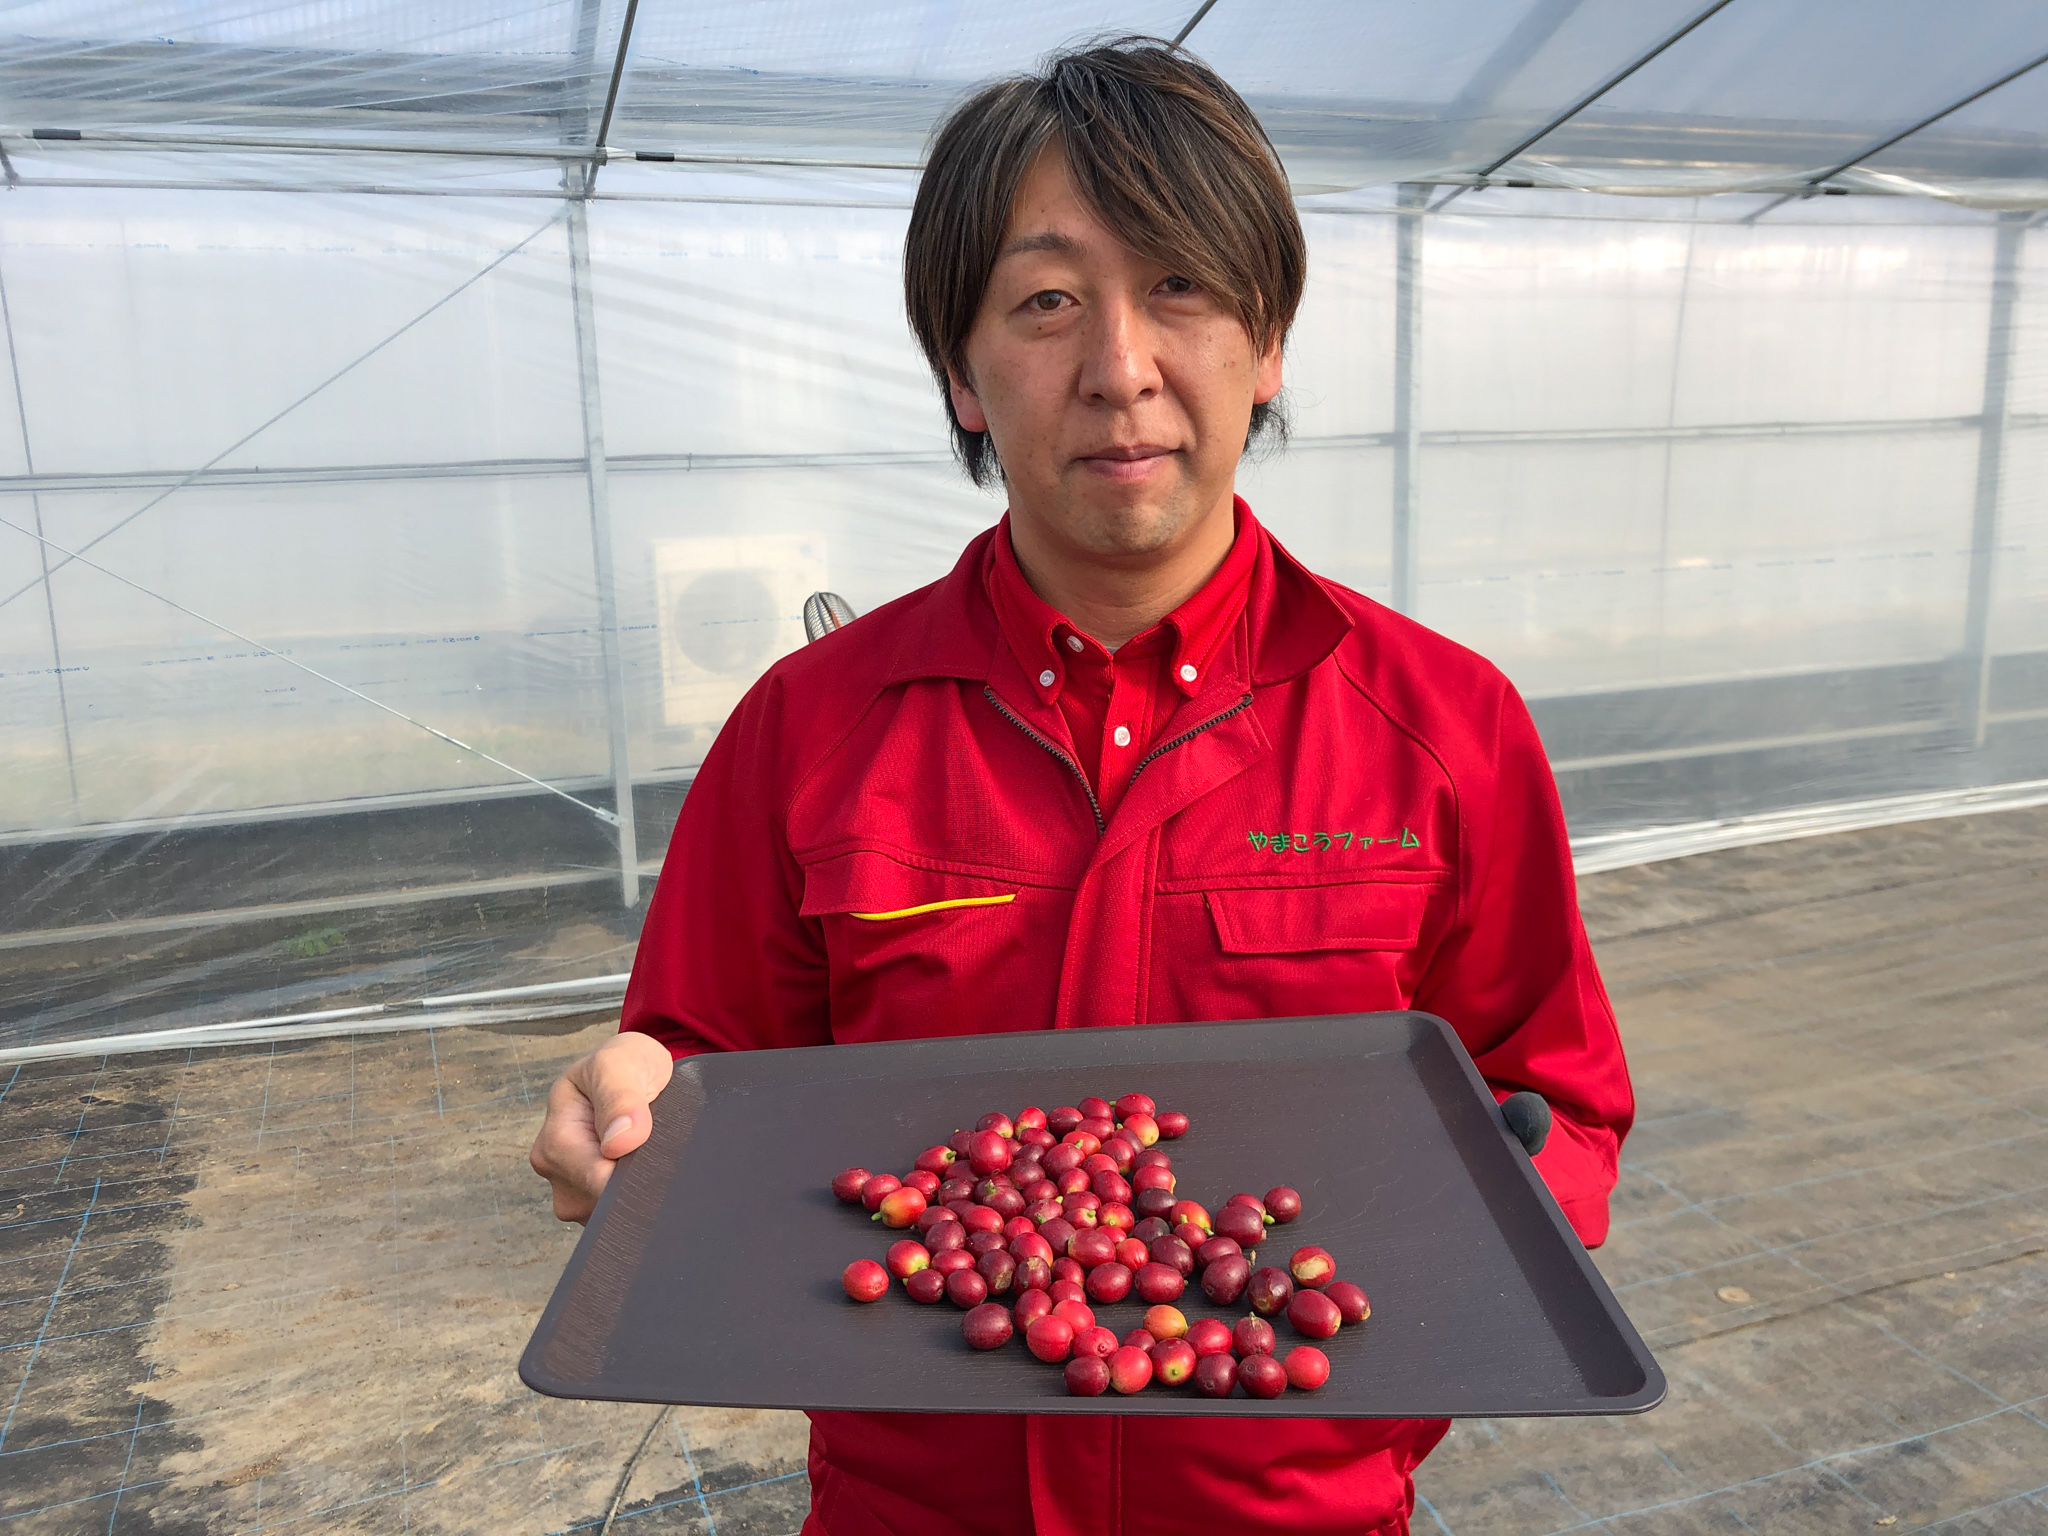 やまこうファームが 国産コーヒー の初収穫に成功 本州で日本国産のコーヒー栽培が可能に やまこうファーム株式会社のプレスリリース